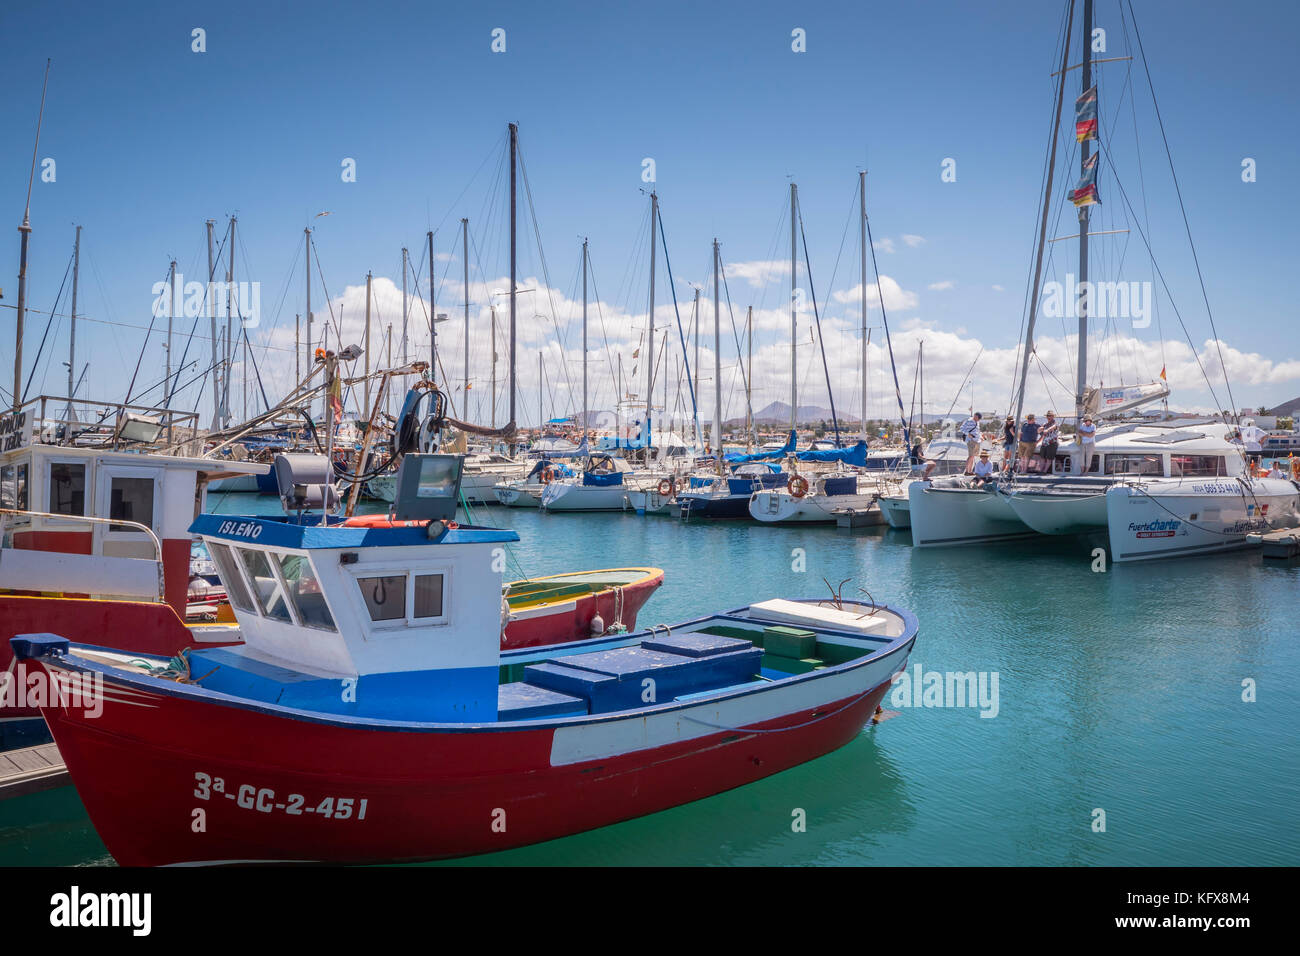 Boats moored in the Marina Corralejo La Oliva Fuerteventura Canary Islands Spain Stock Photo